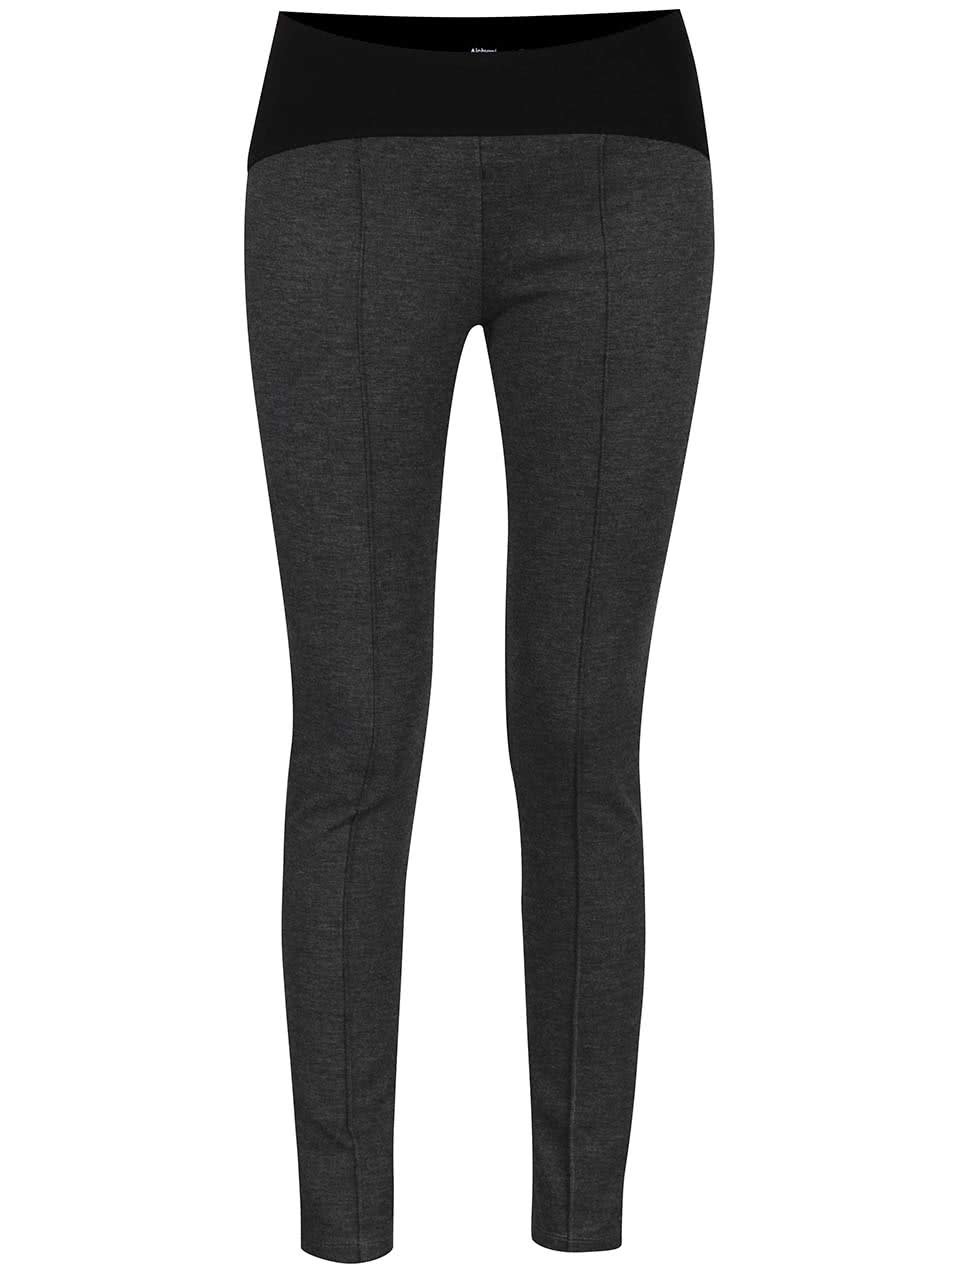 Černo-šedé elastické kalhoty Alchymi Situla